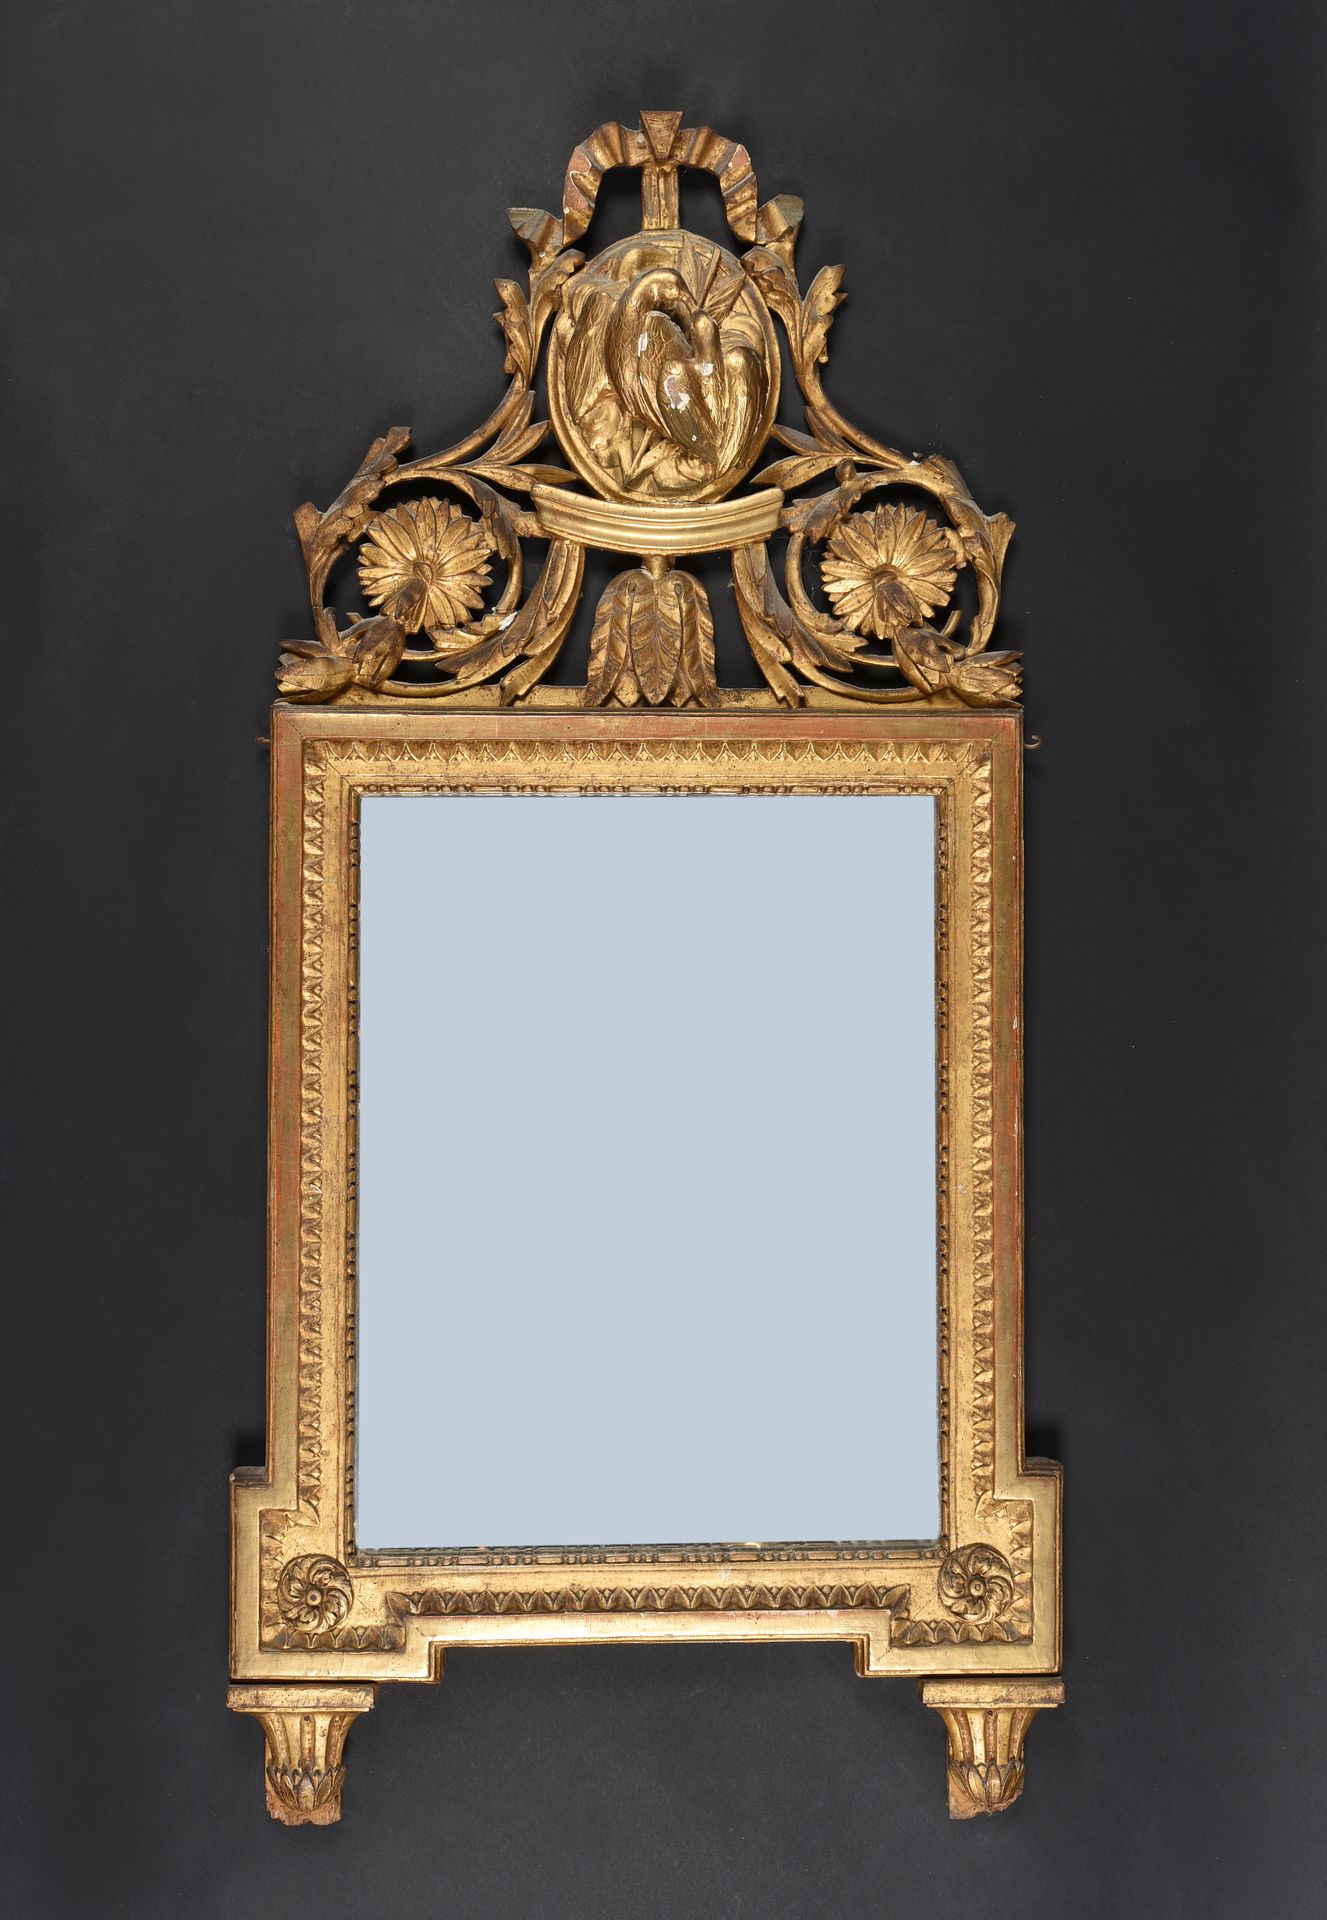 Null 框中镜

用镀金和雕刻的木头。门楣上有两只鸽子。

18世纪晚期

132 x 65 cm

(损坏和丢失的部件)